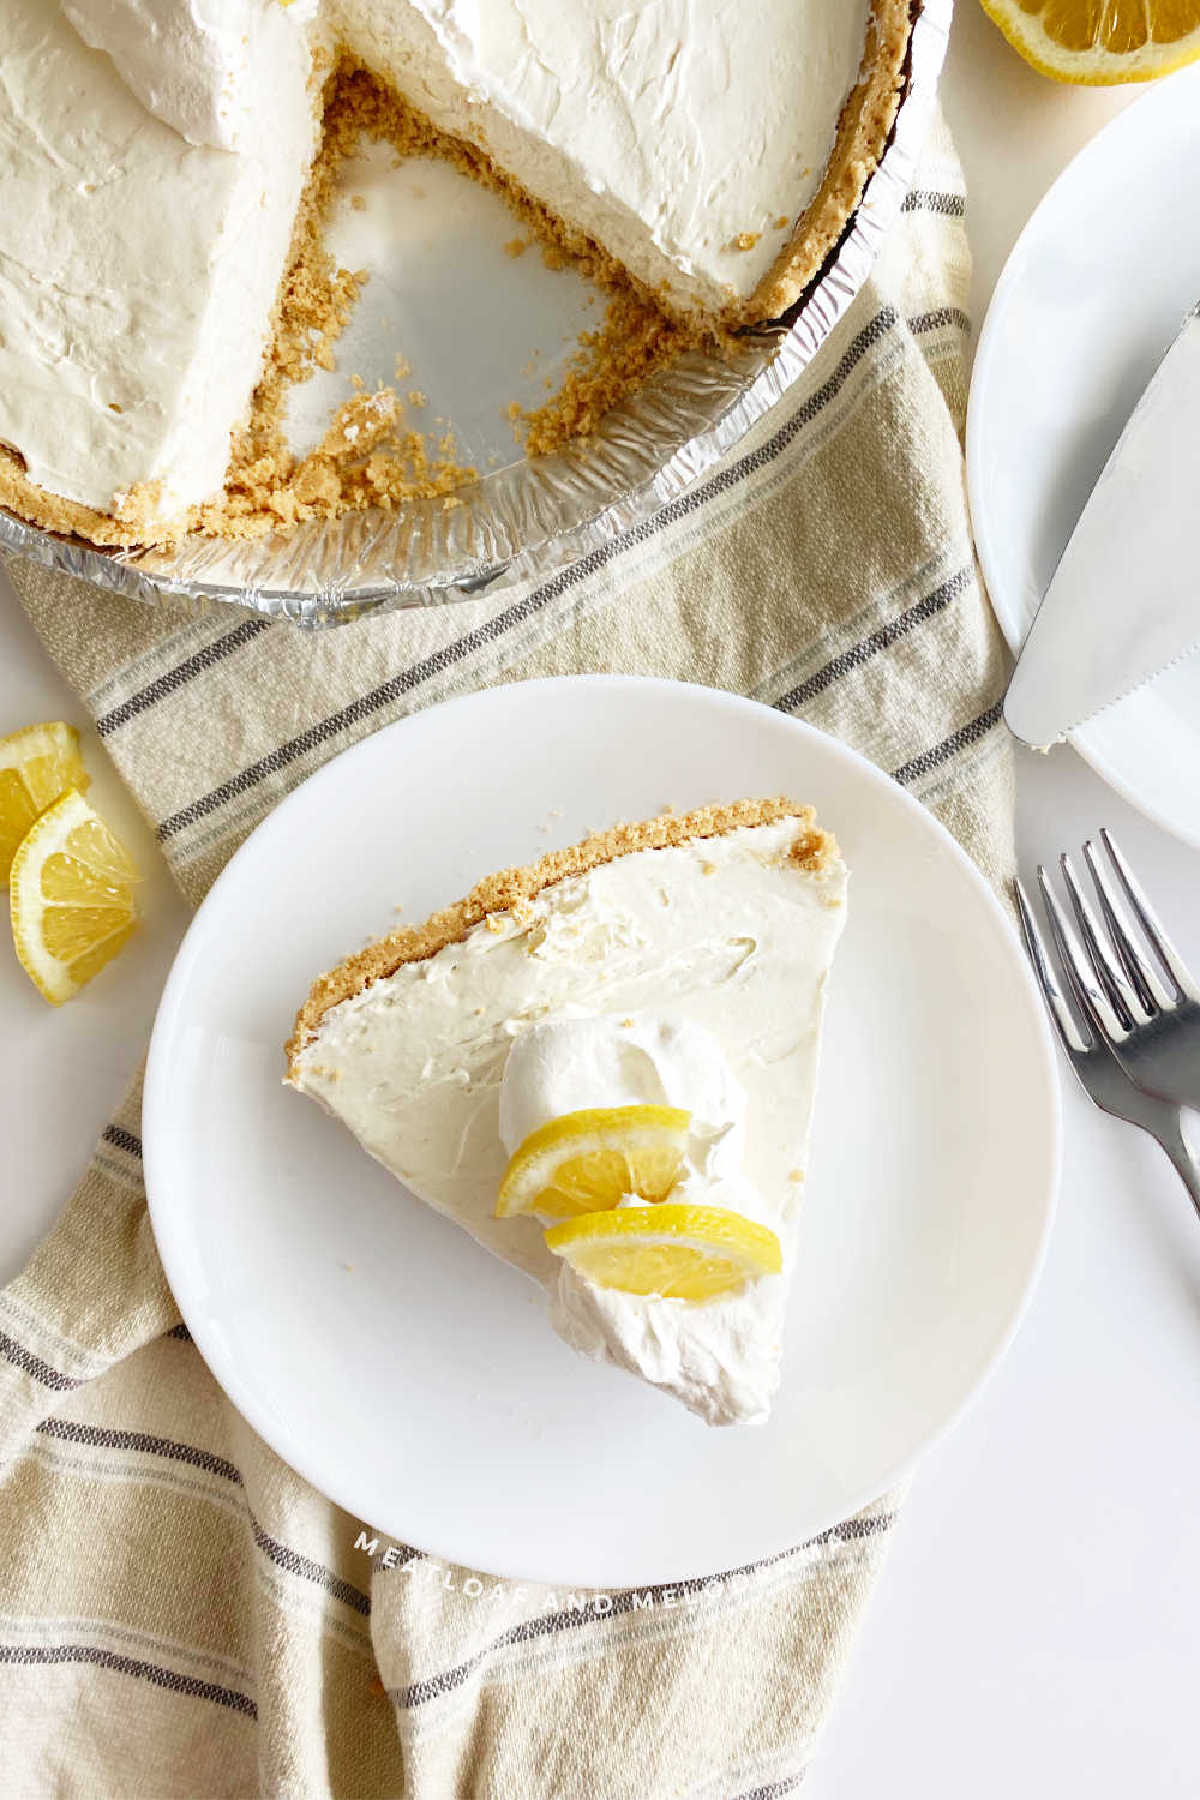 slice of kool aid pie with lemon slices on table